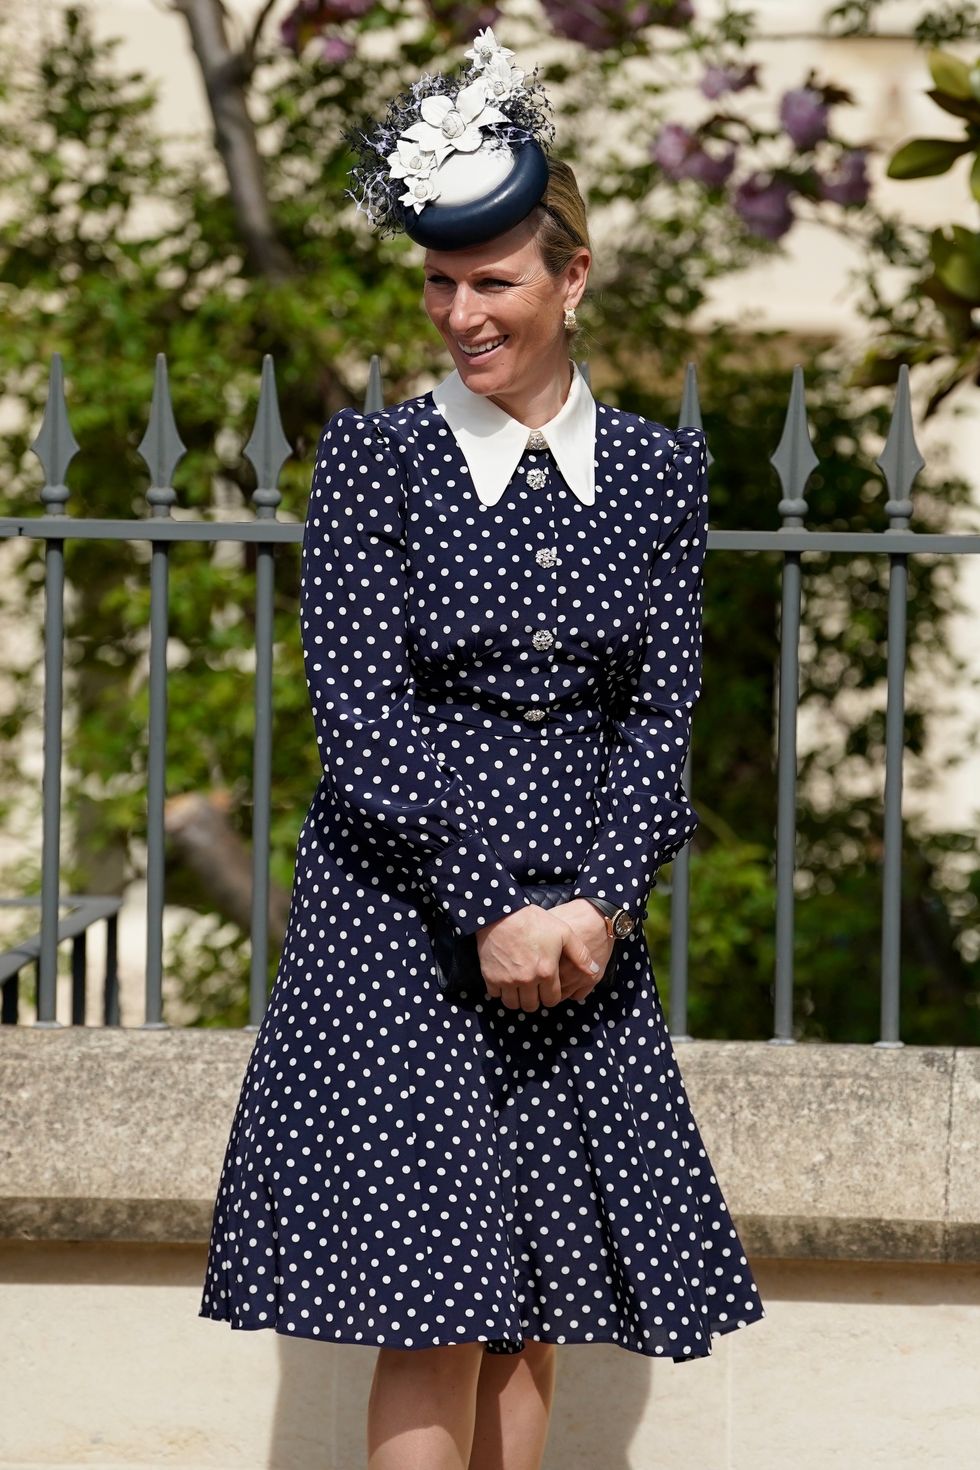 Kate Middleton's Polka-Dot Dress Is a Staple for Spring